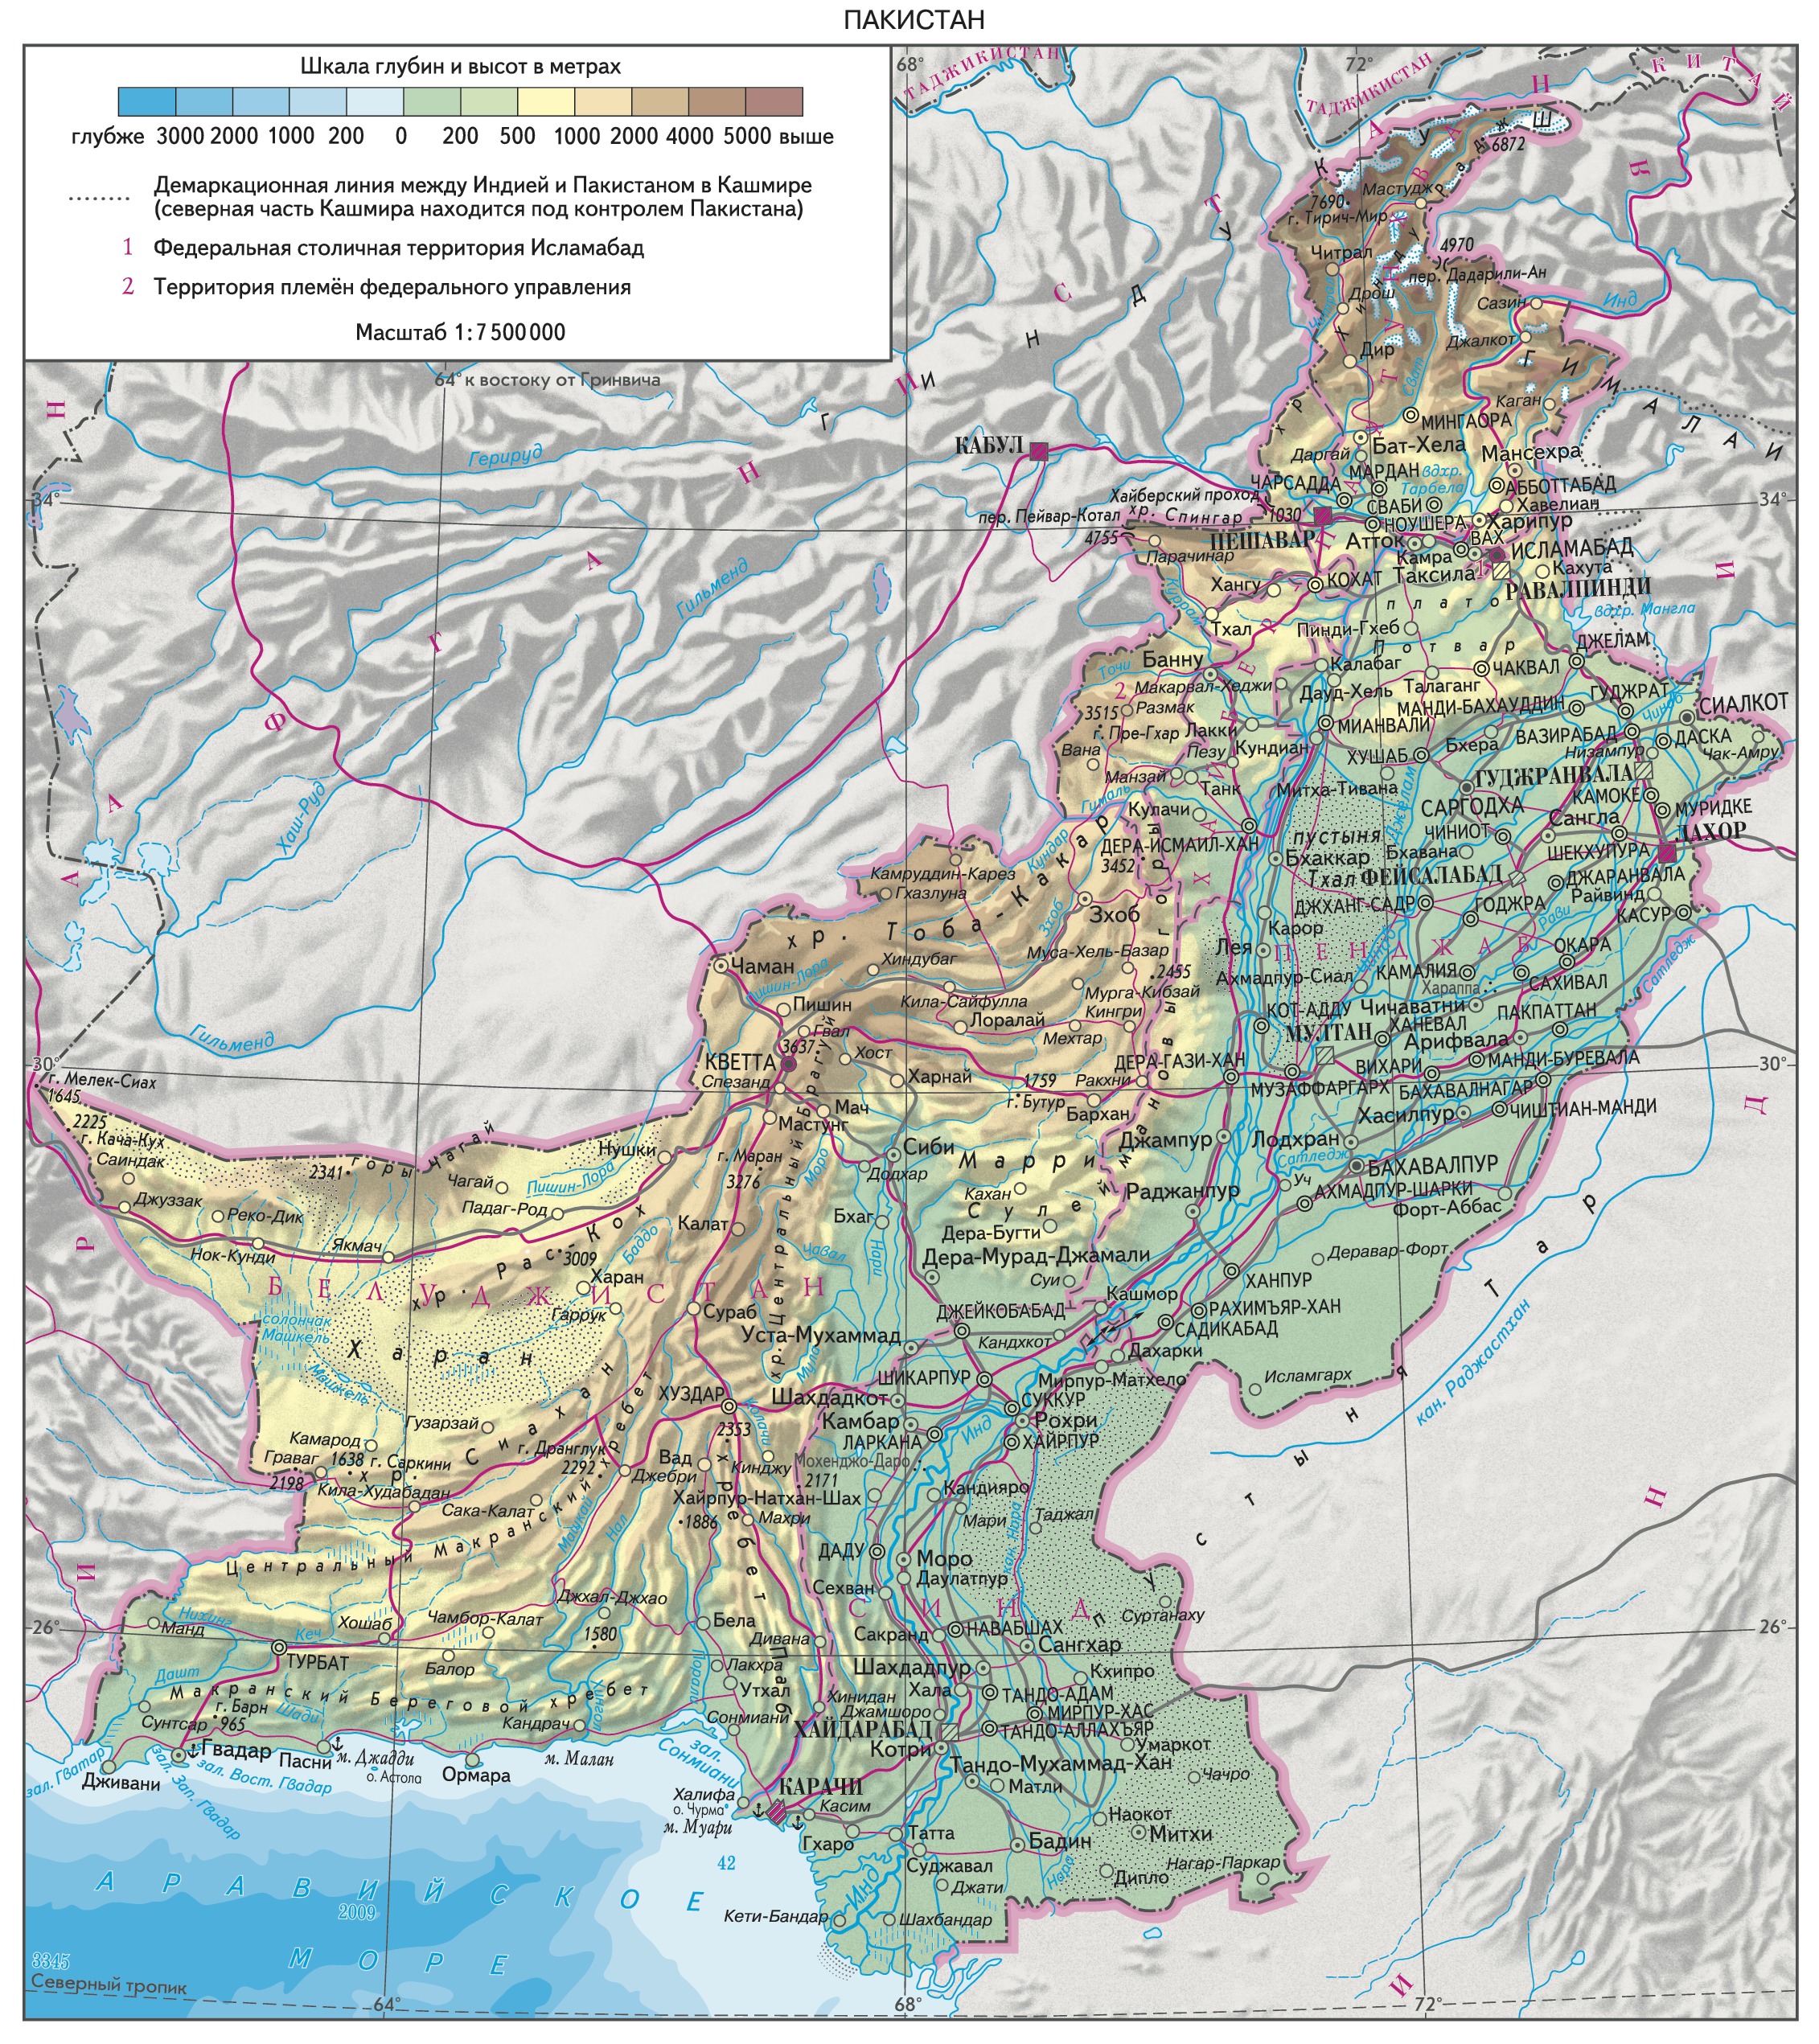 Малаканд (Пакистан) на карте мира